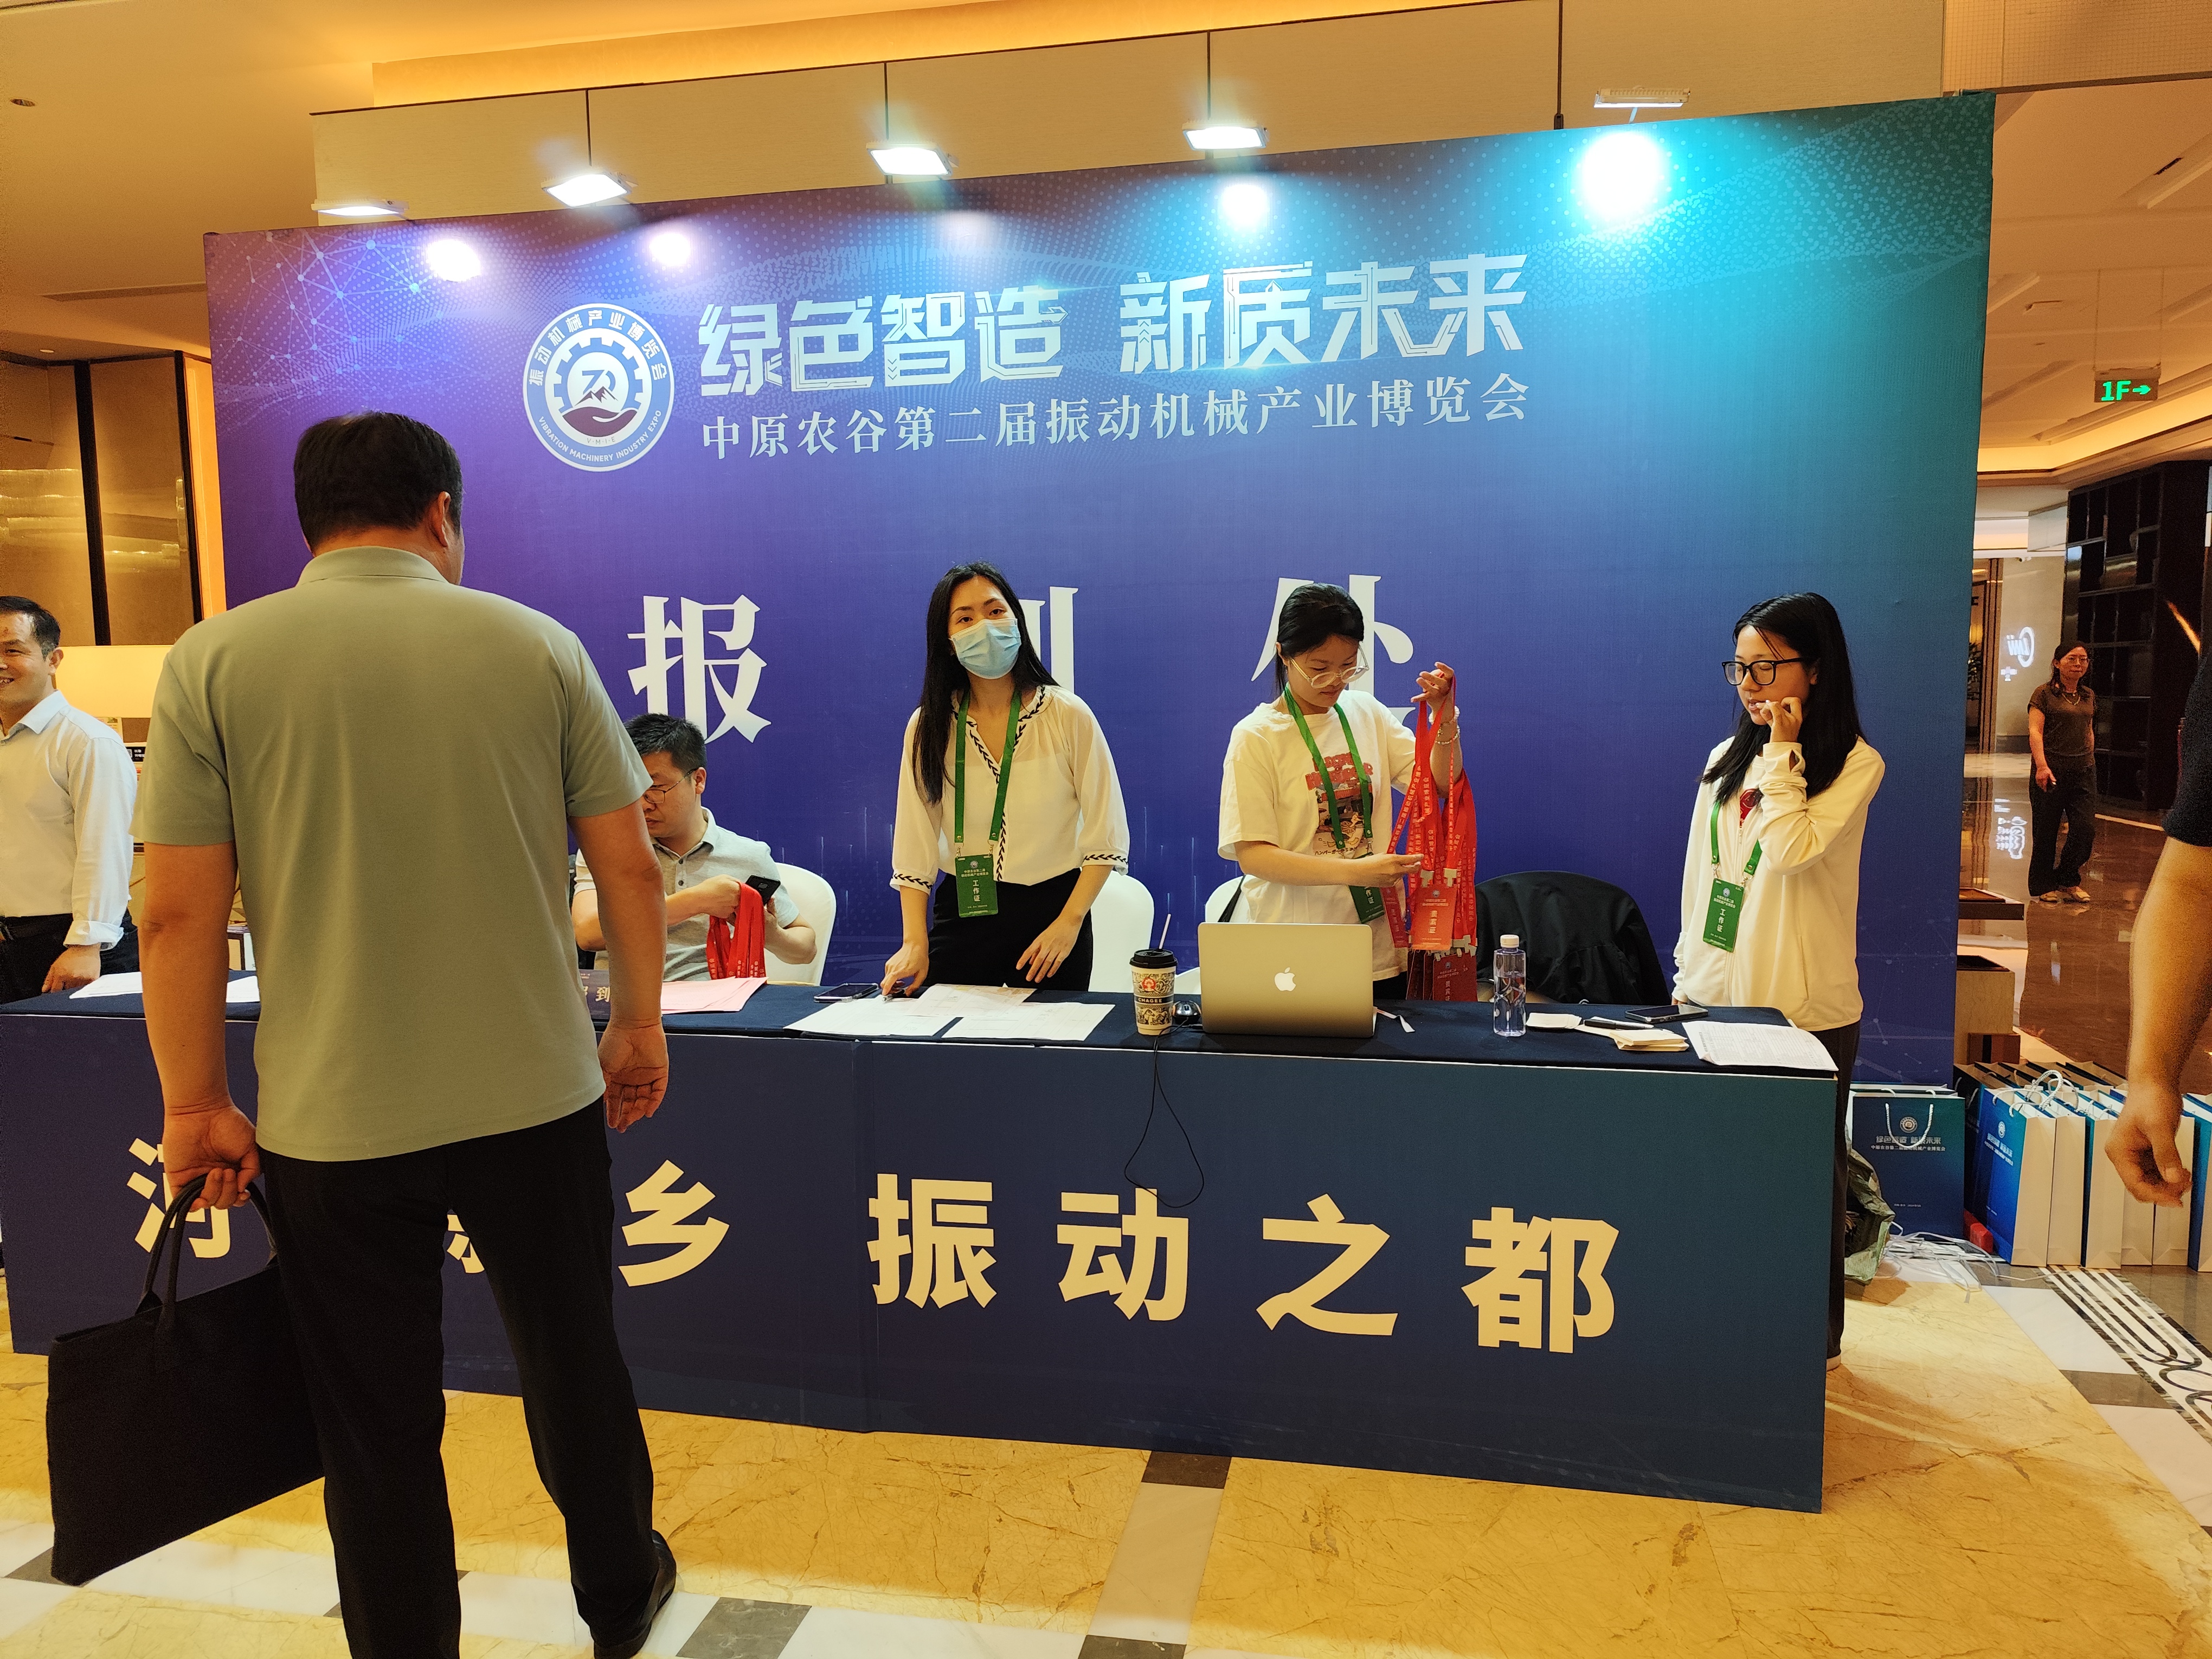 中原农谷第二届振动机械产业博览会5月17日开幕